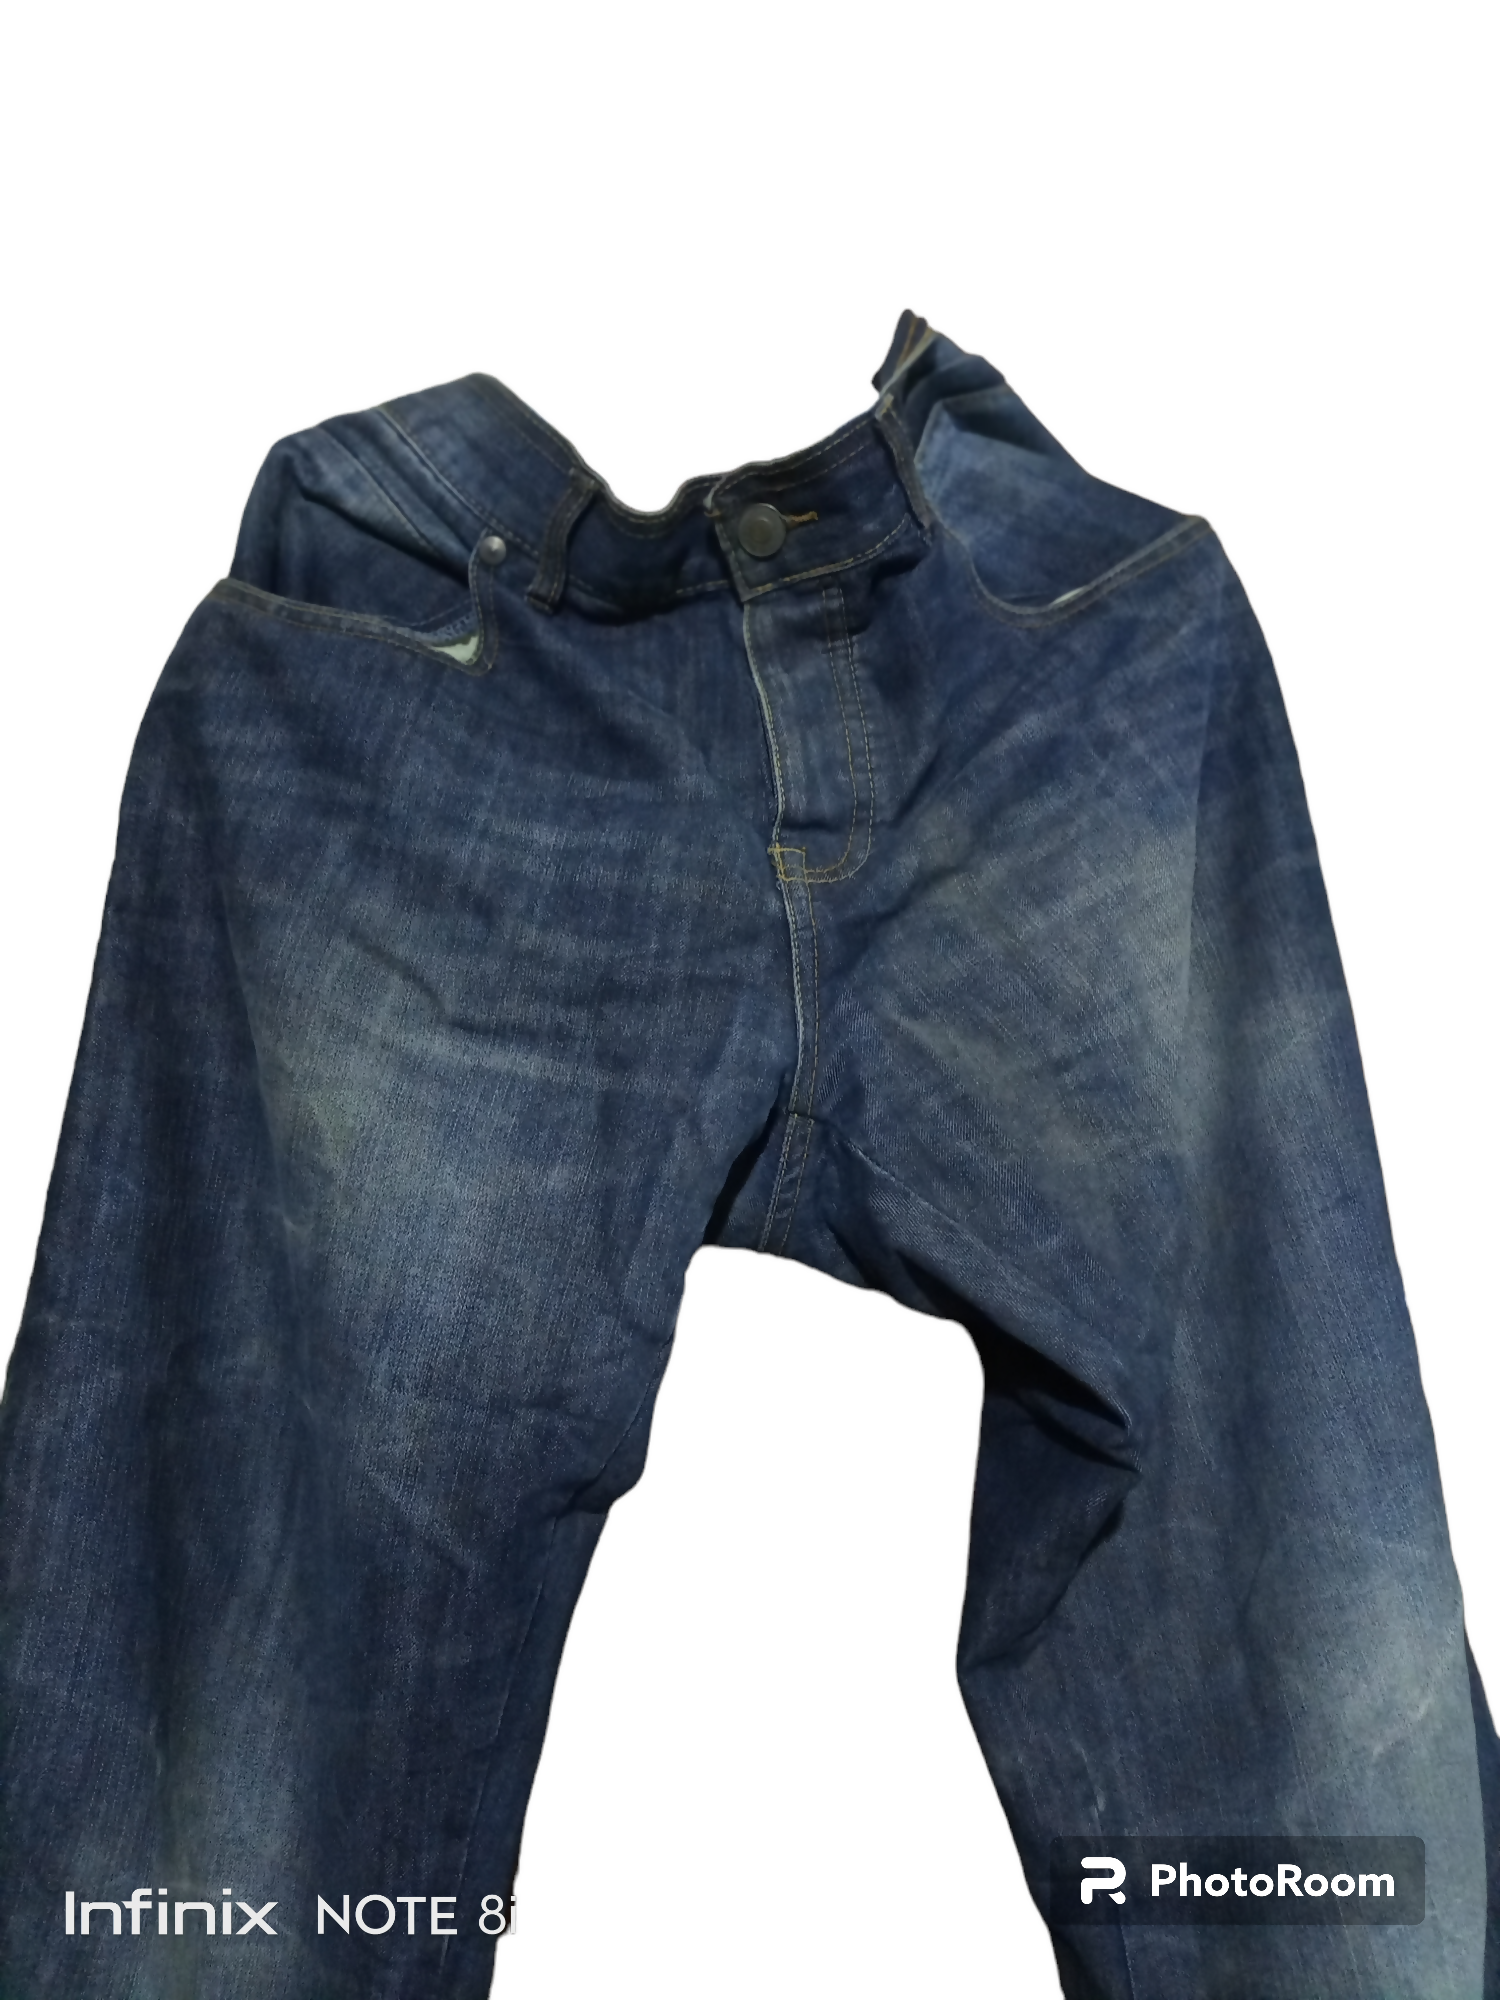 Blue original denim jeans | Men Jeans & Bottoms | Preloved